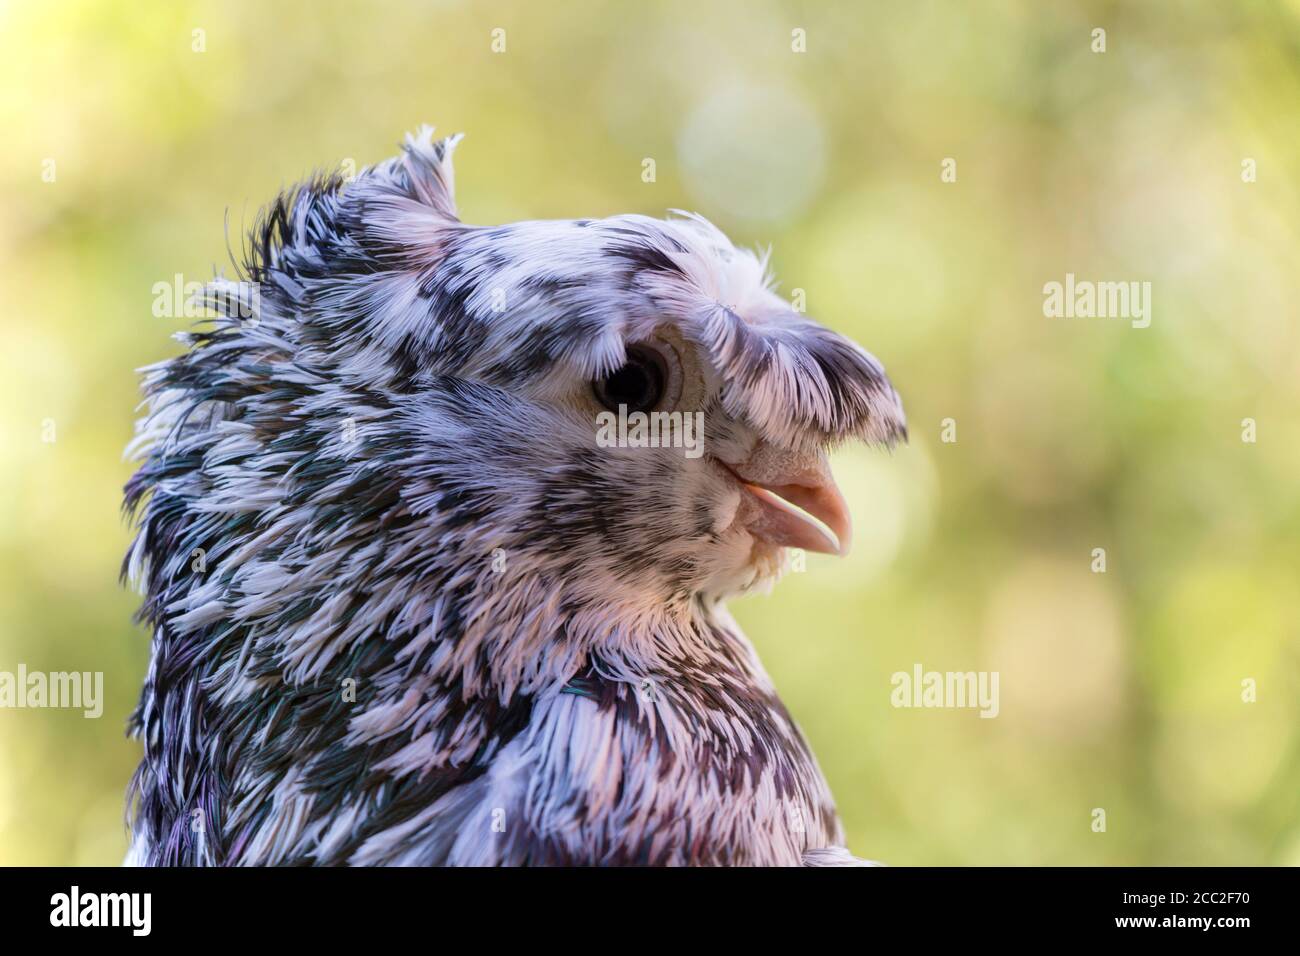 Englisch Fantail Taube Nahaufnahme, der Hintergrund ist verschwommen. Stockfoto